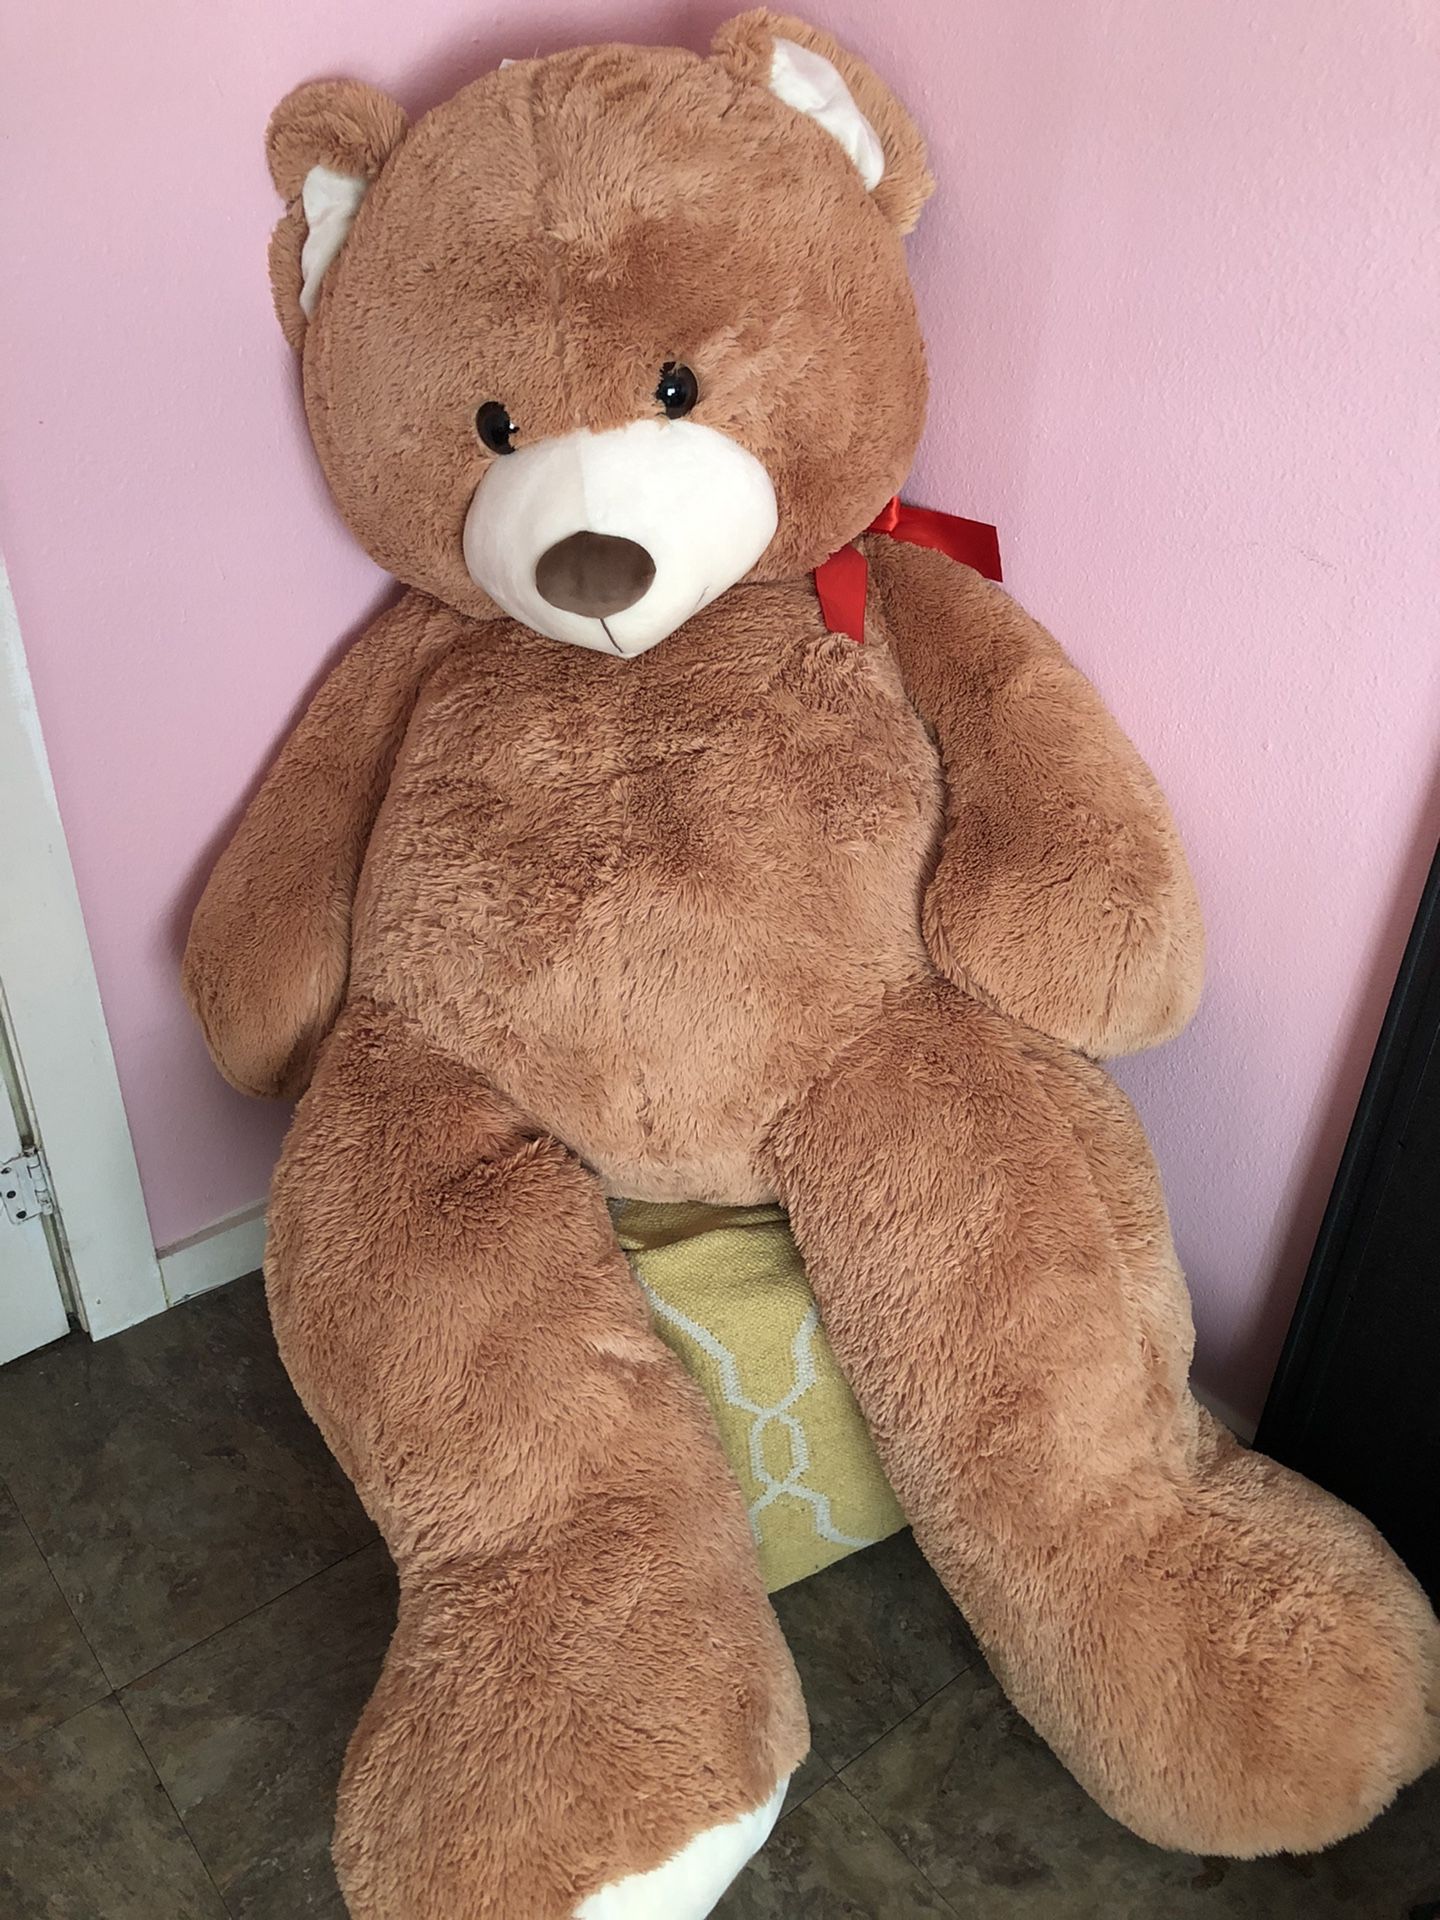 6 ft. tall Teddy bear